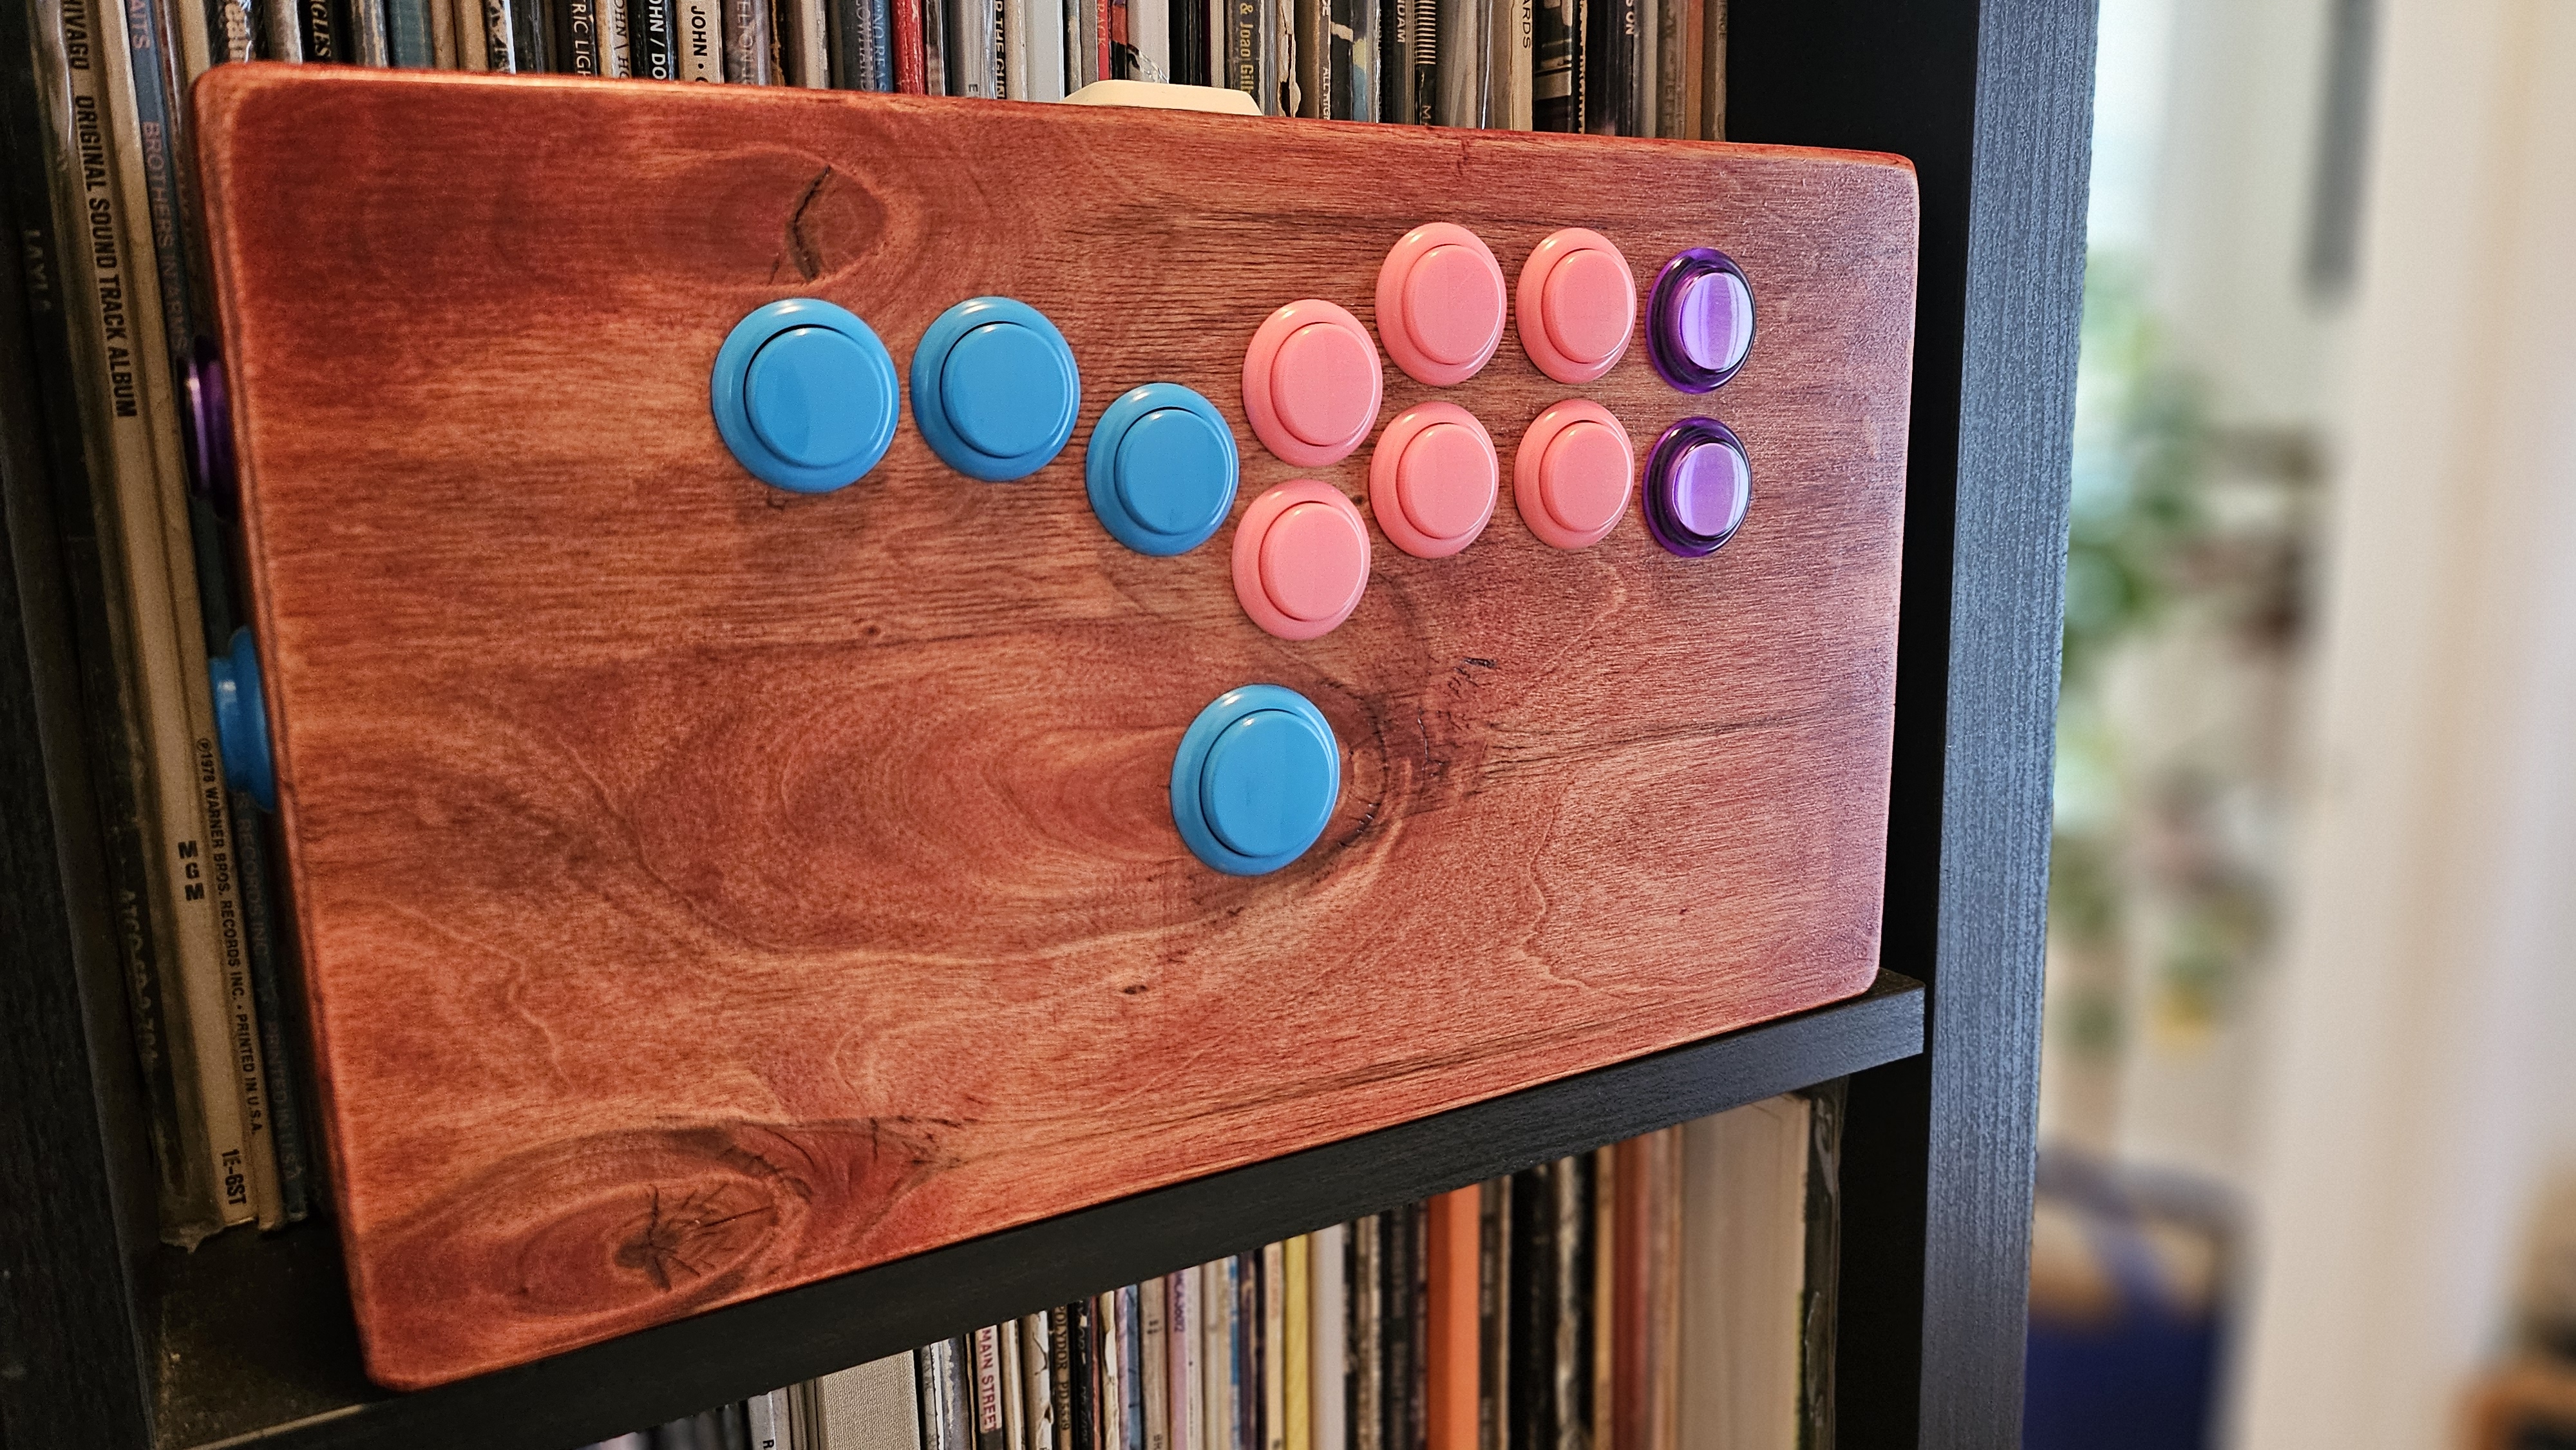 Hitbox de madera personalizado con botones de color chicle en una estantería